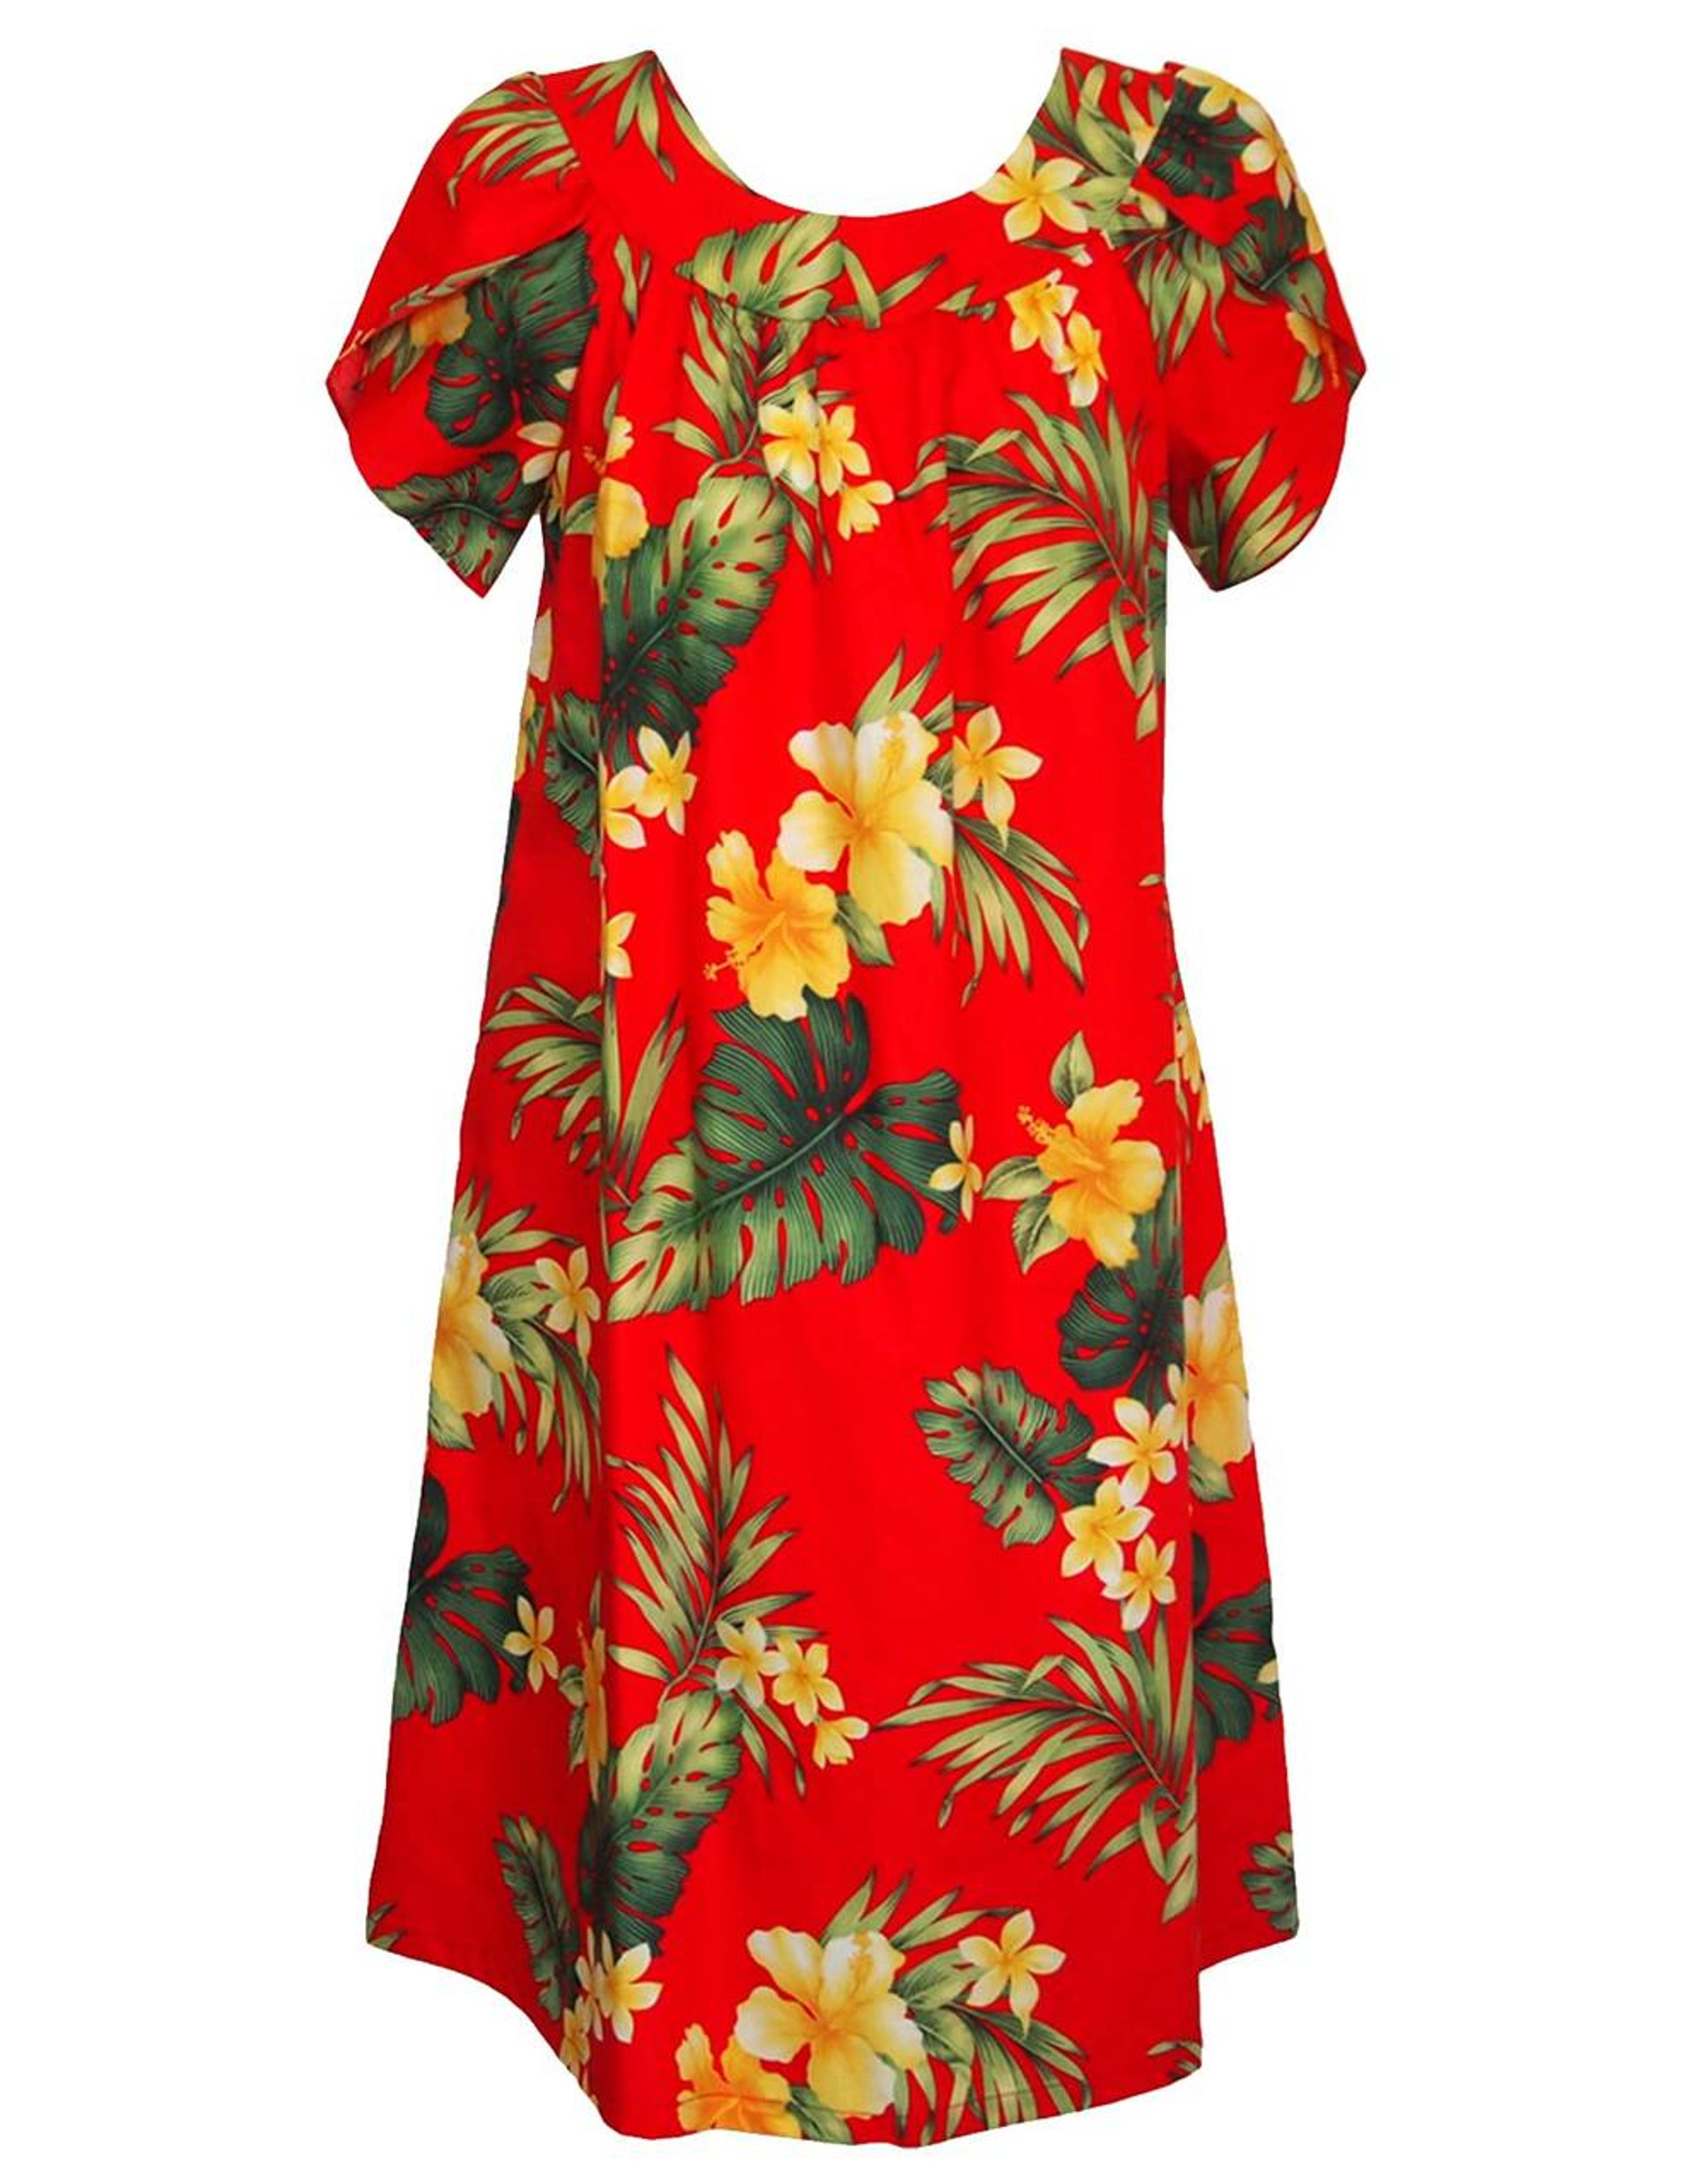 Muumuu Dress made in Hawaii